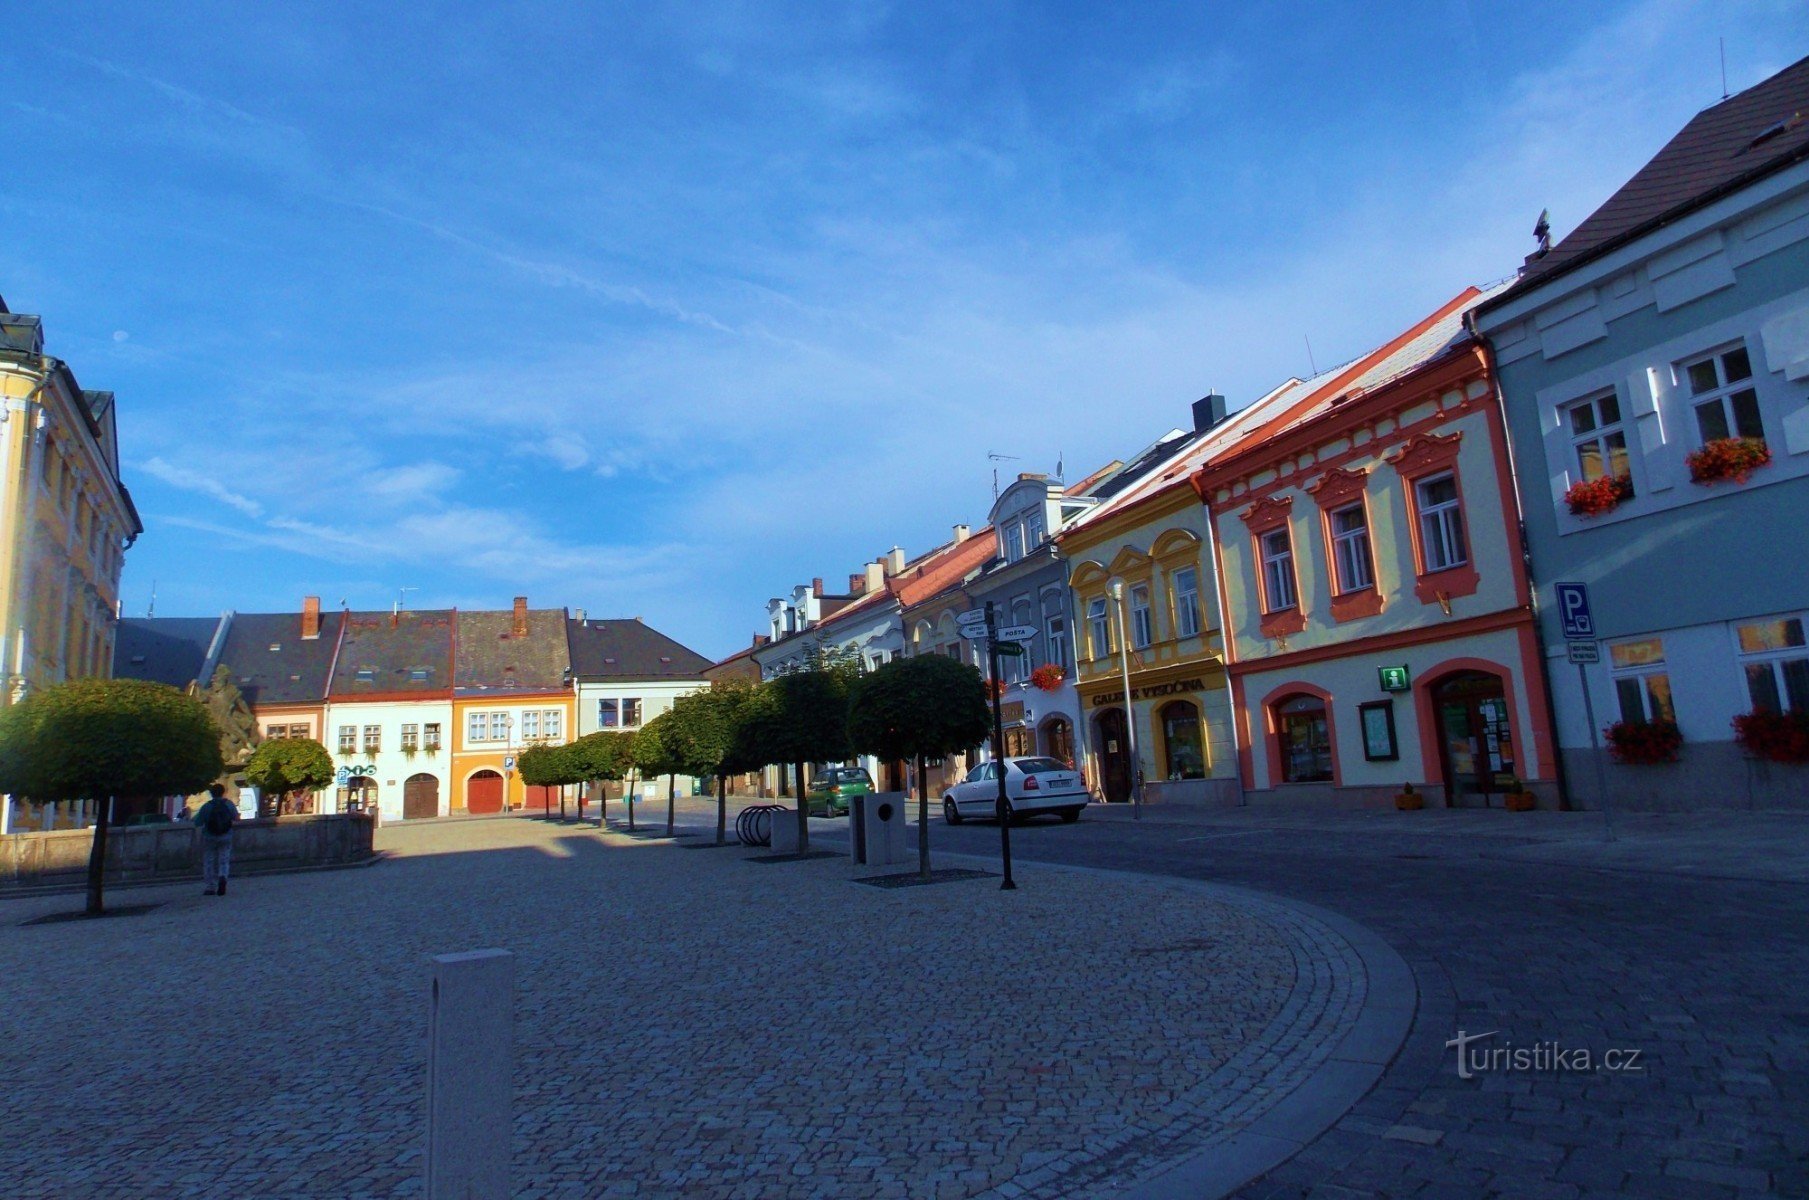 Palackého náměstí in de koninklijke stad - Polička